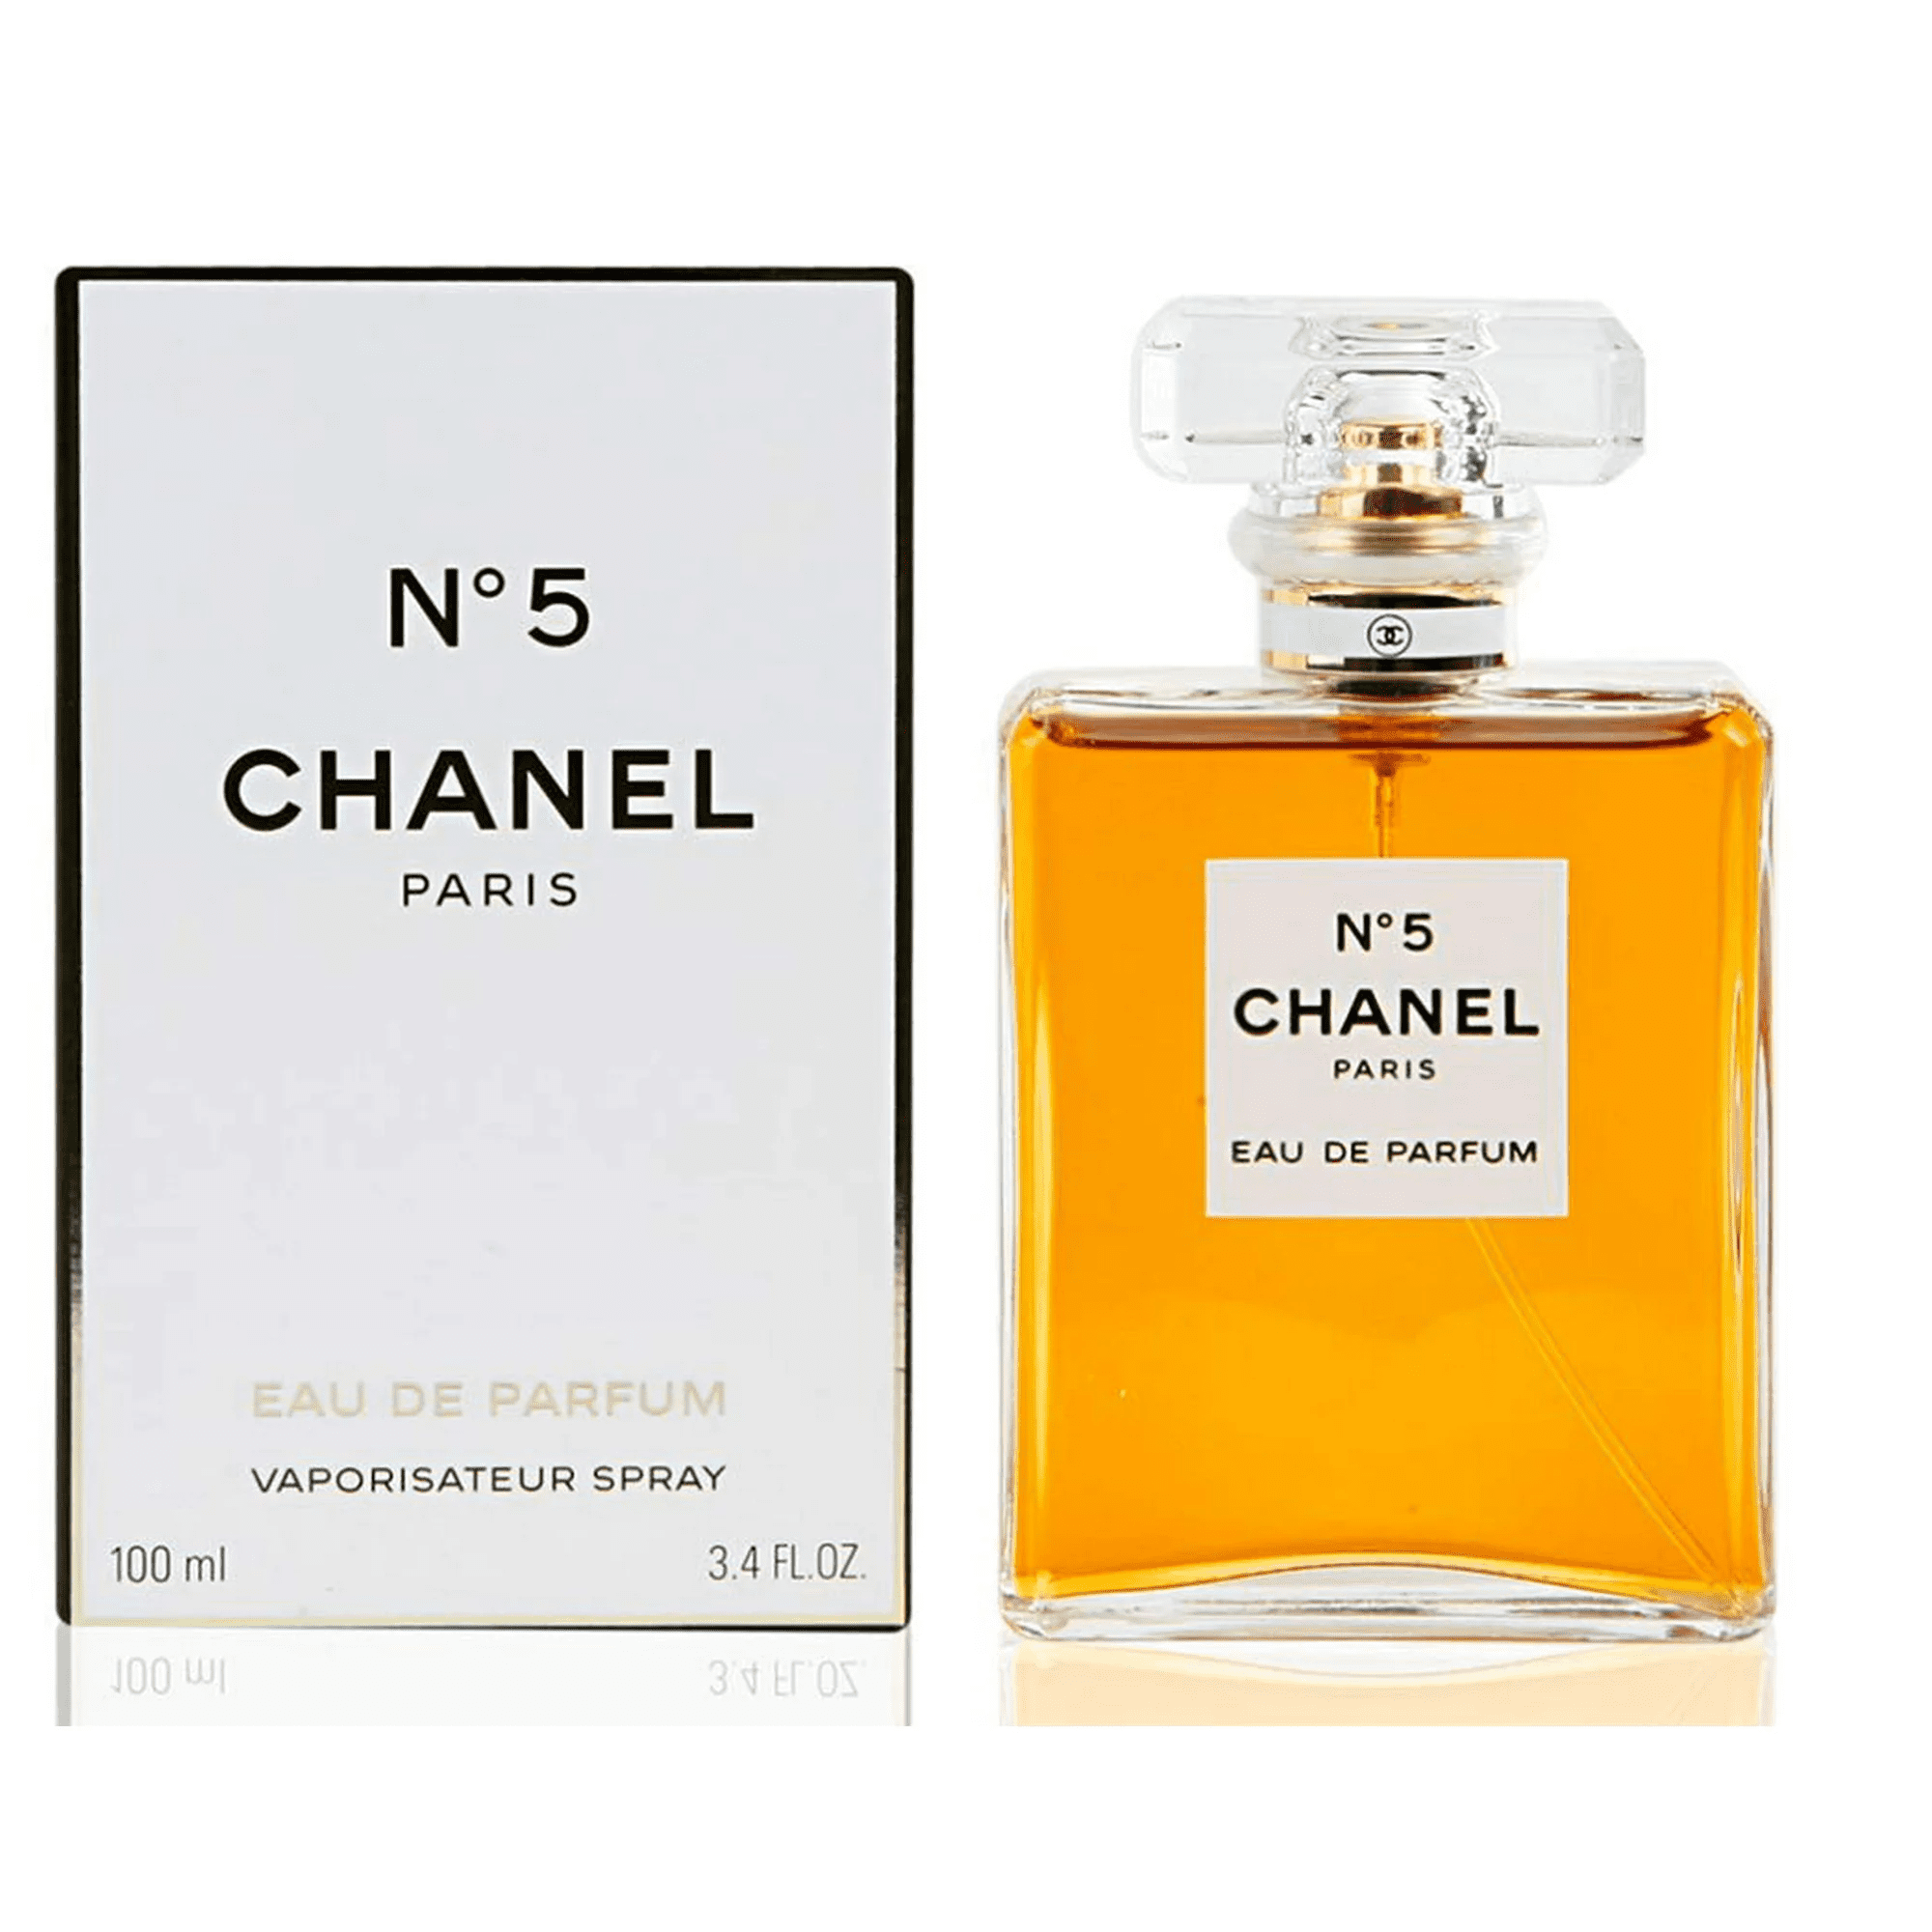 Ch-anel_ No. 5 Eau de Parfum Spray, Perfume for Women, 3.4 oz